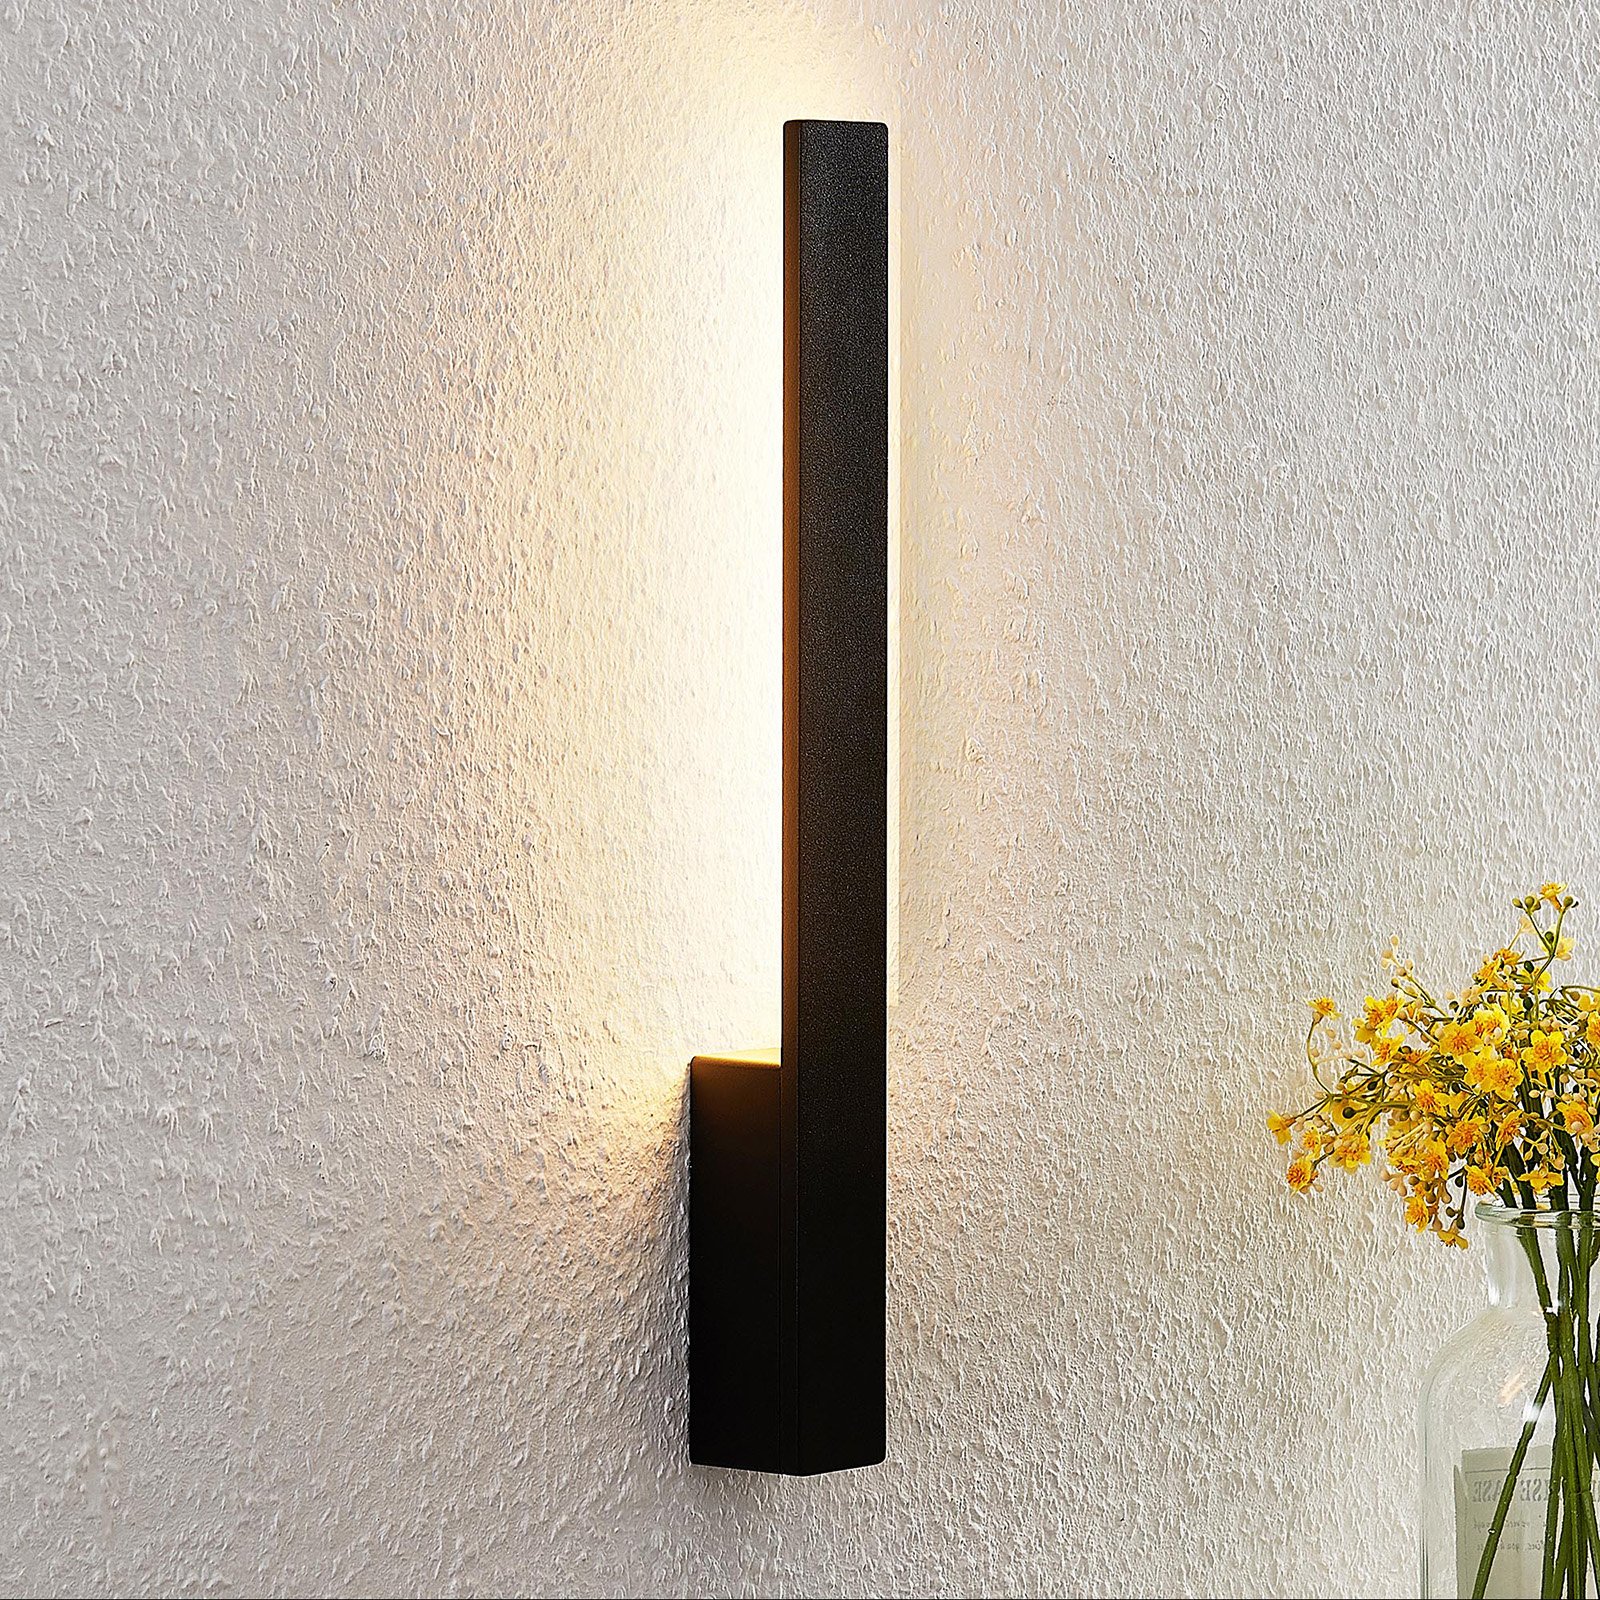 Arcchio Thiago LED wall light black